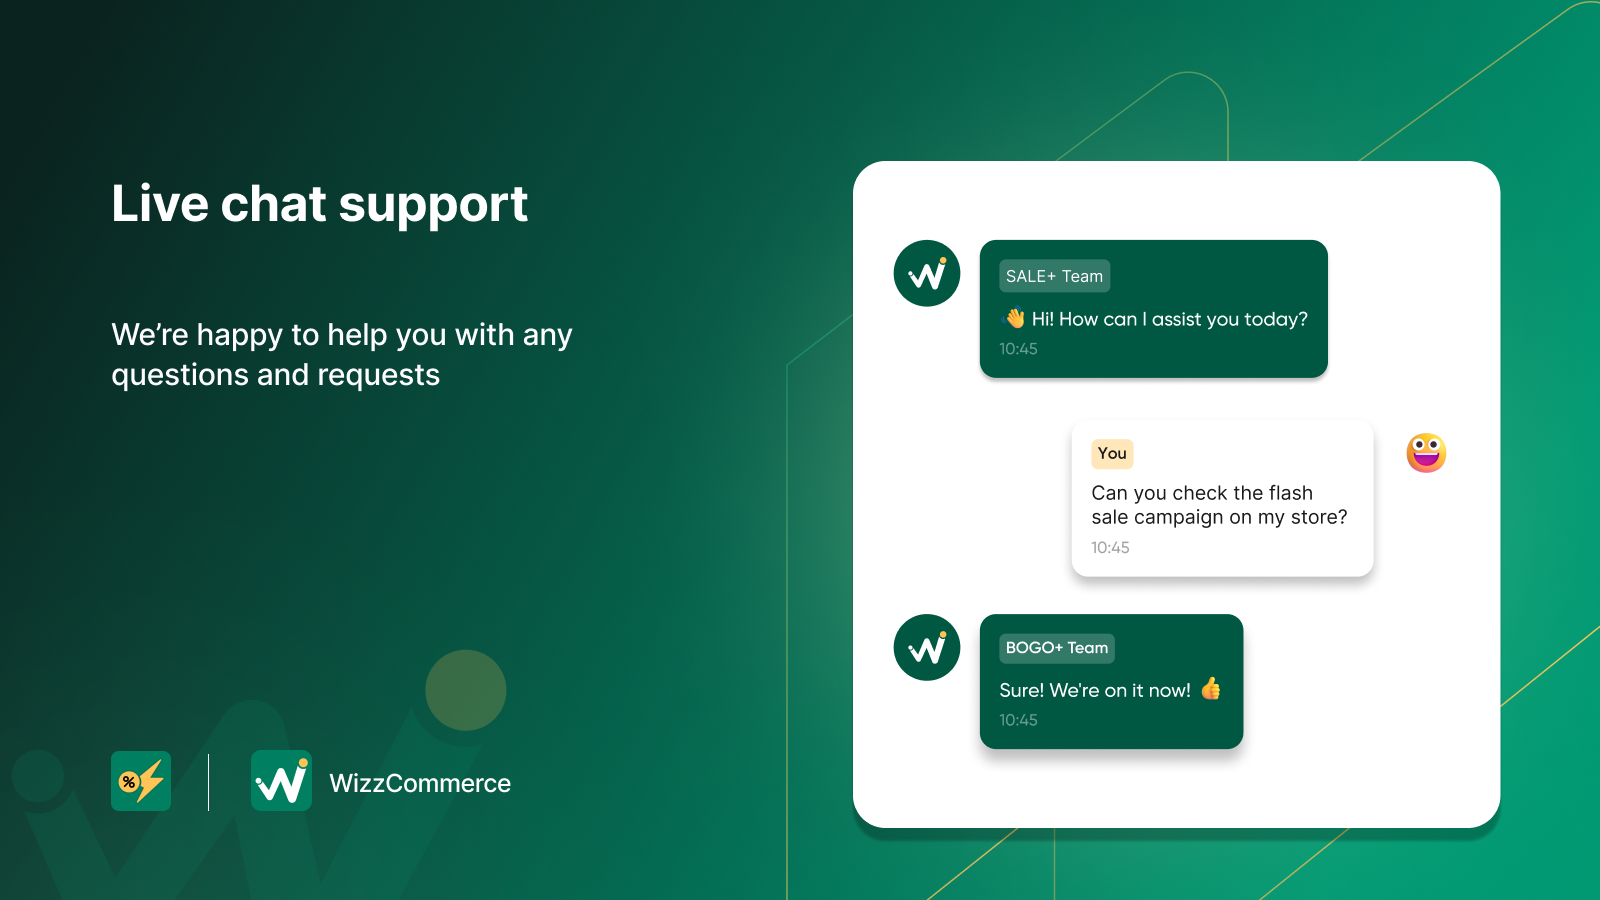 WizzCommerce tilbyder live chat support 7 dage om ugen